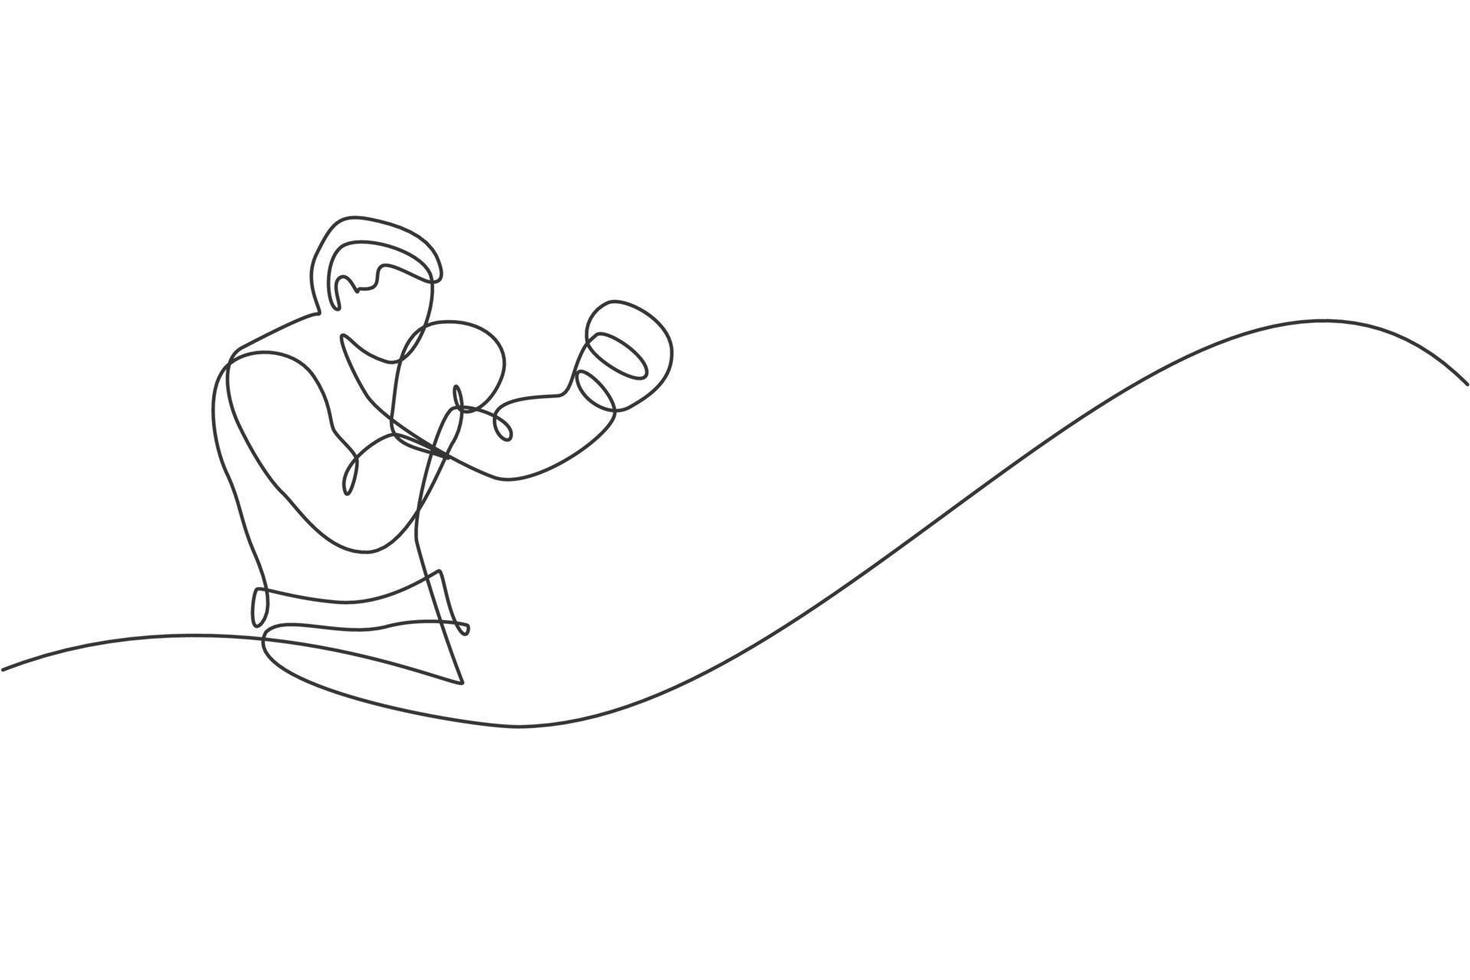 eine durchgehende Strichzeichnung des jungen sportlichen Boxers trainiert seine Verteidigungshaltung. Konzept des Wettkampfkampfsports. dynamische Single-Line-Draw-Design-Vektorillustration für Boxkampf-Werbeplakat vektor